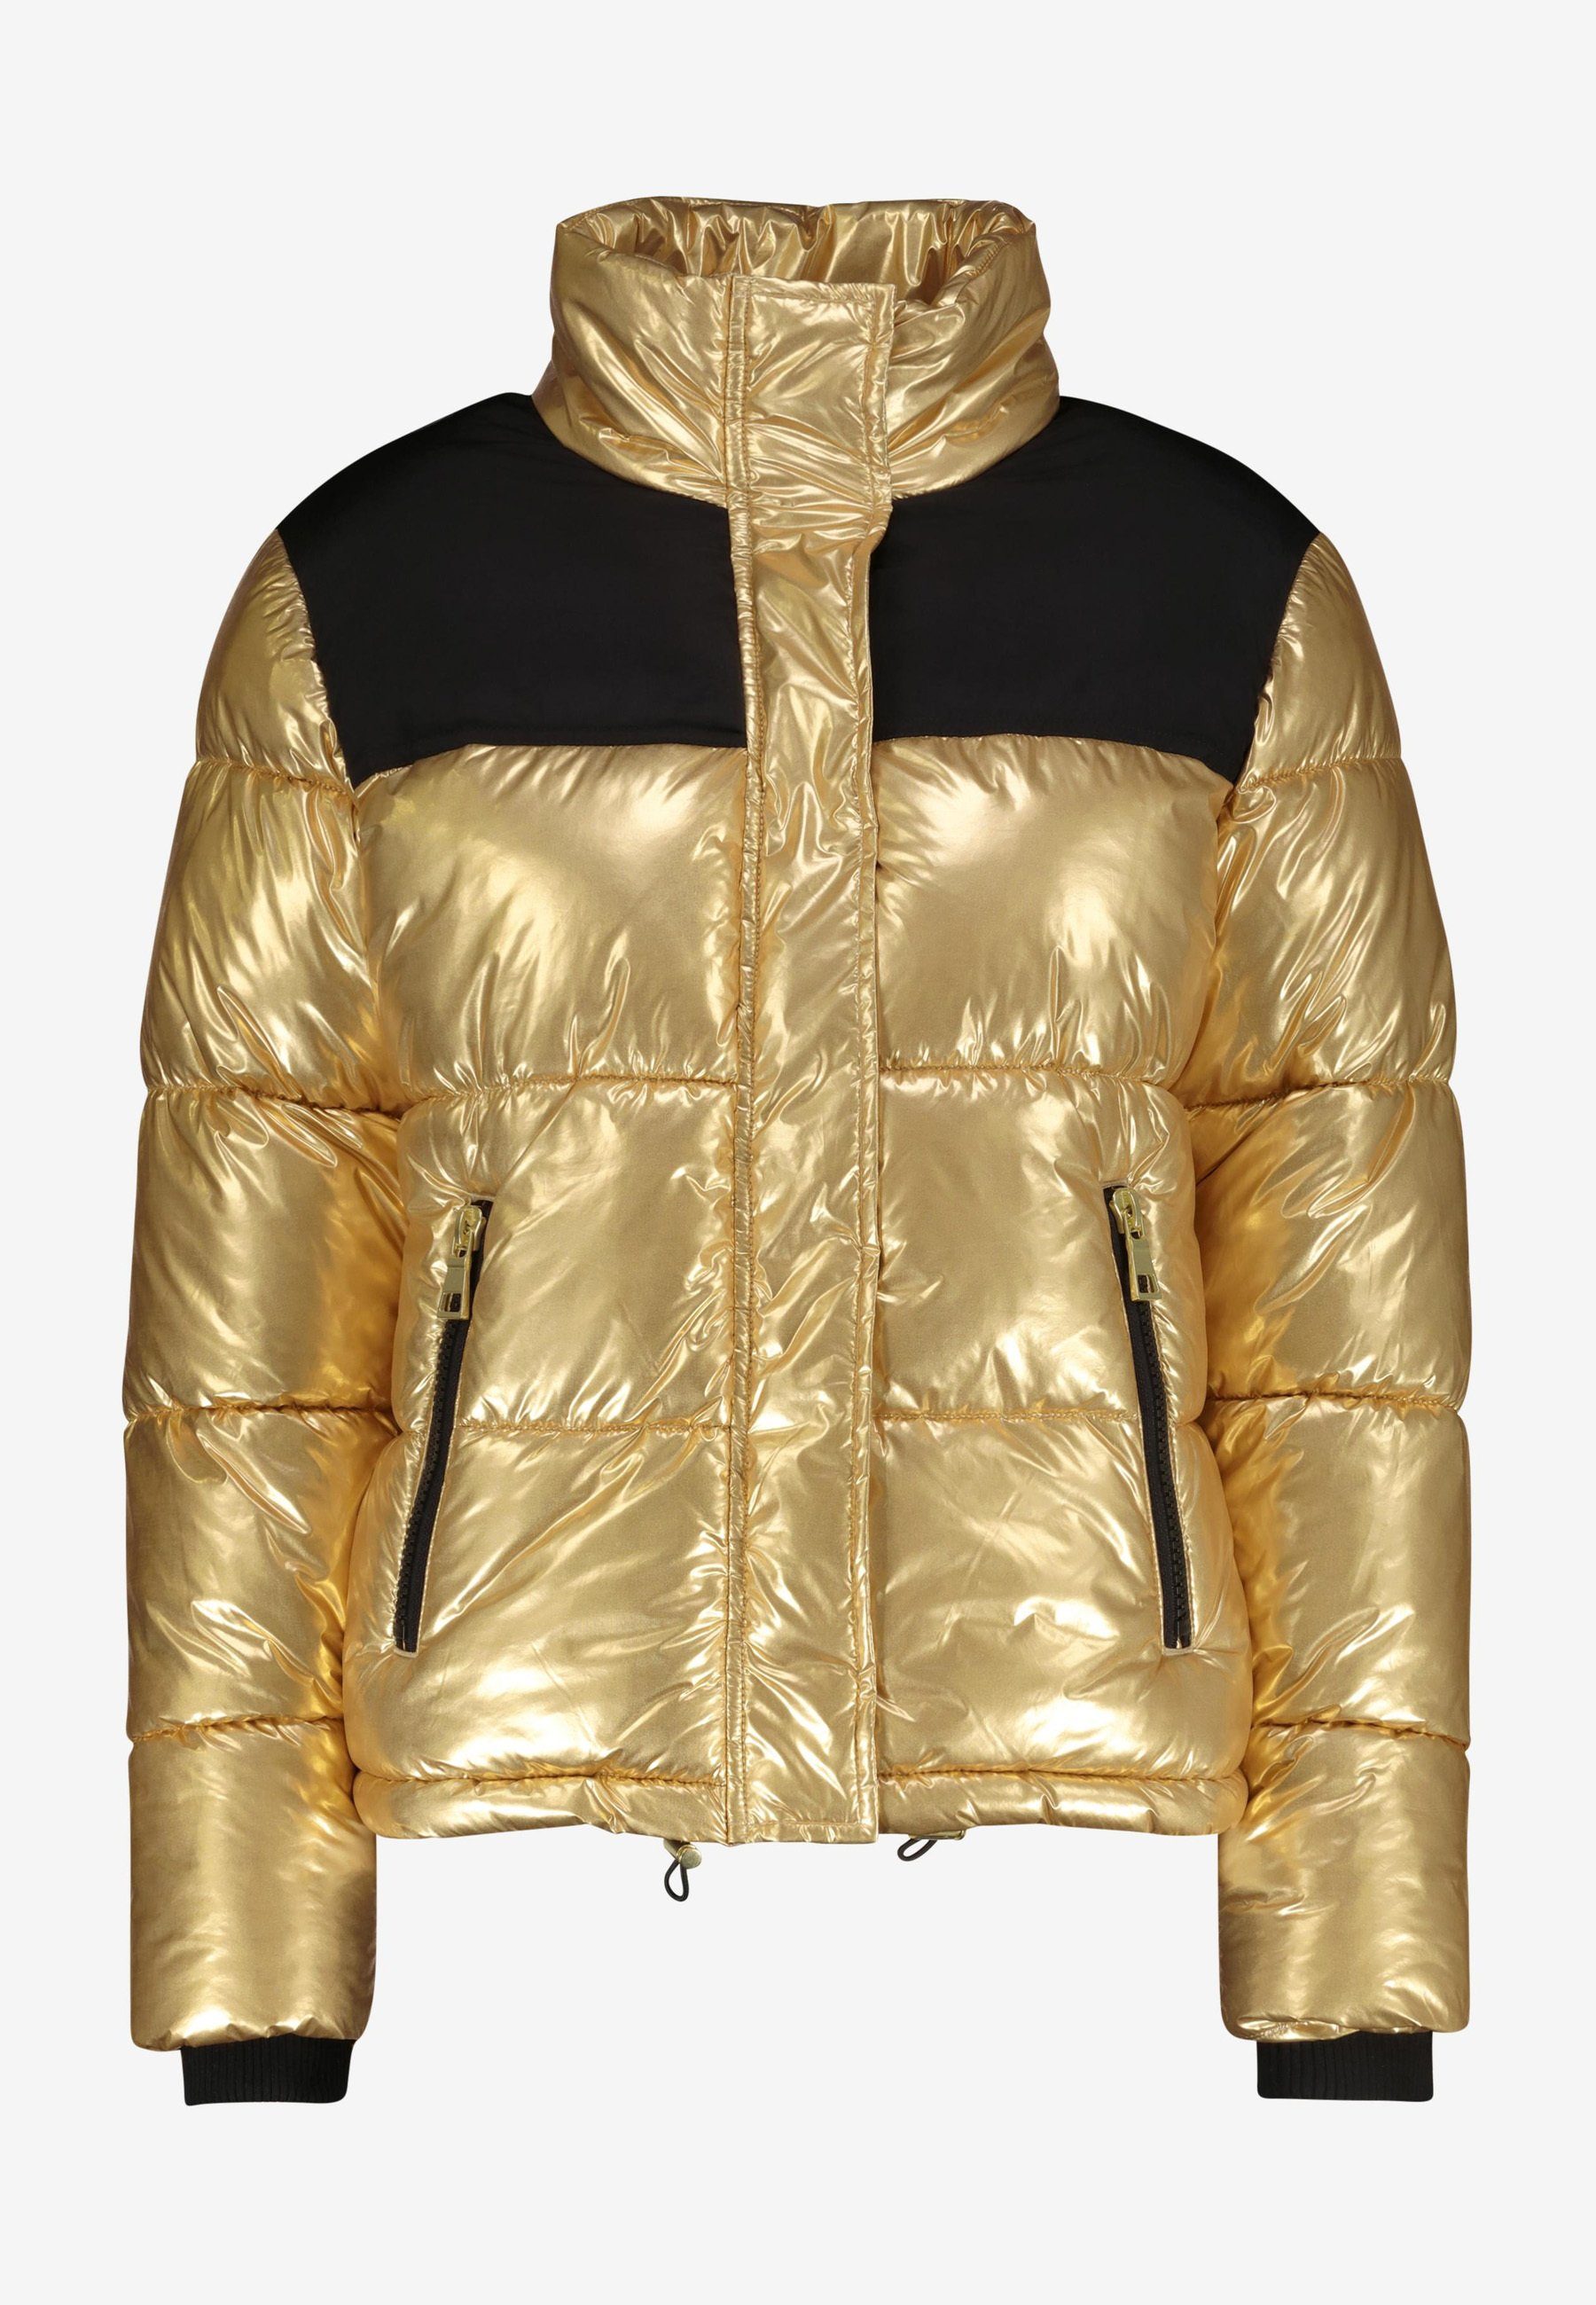 Goldene Jacke online kaufen | OTTO